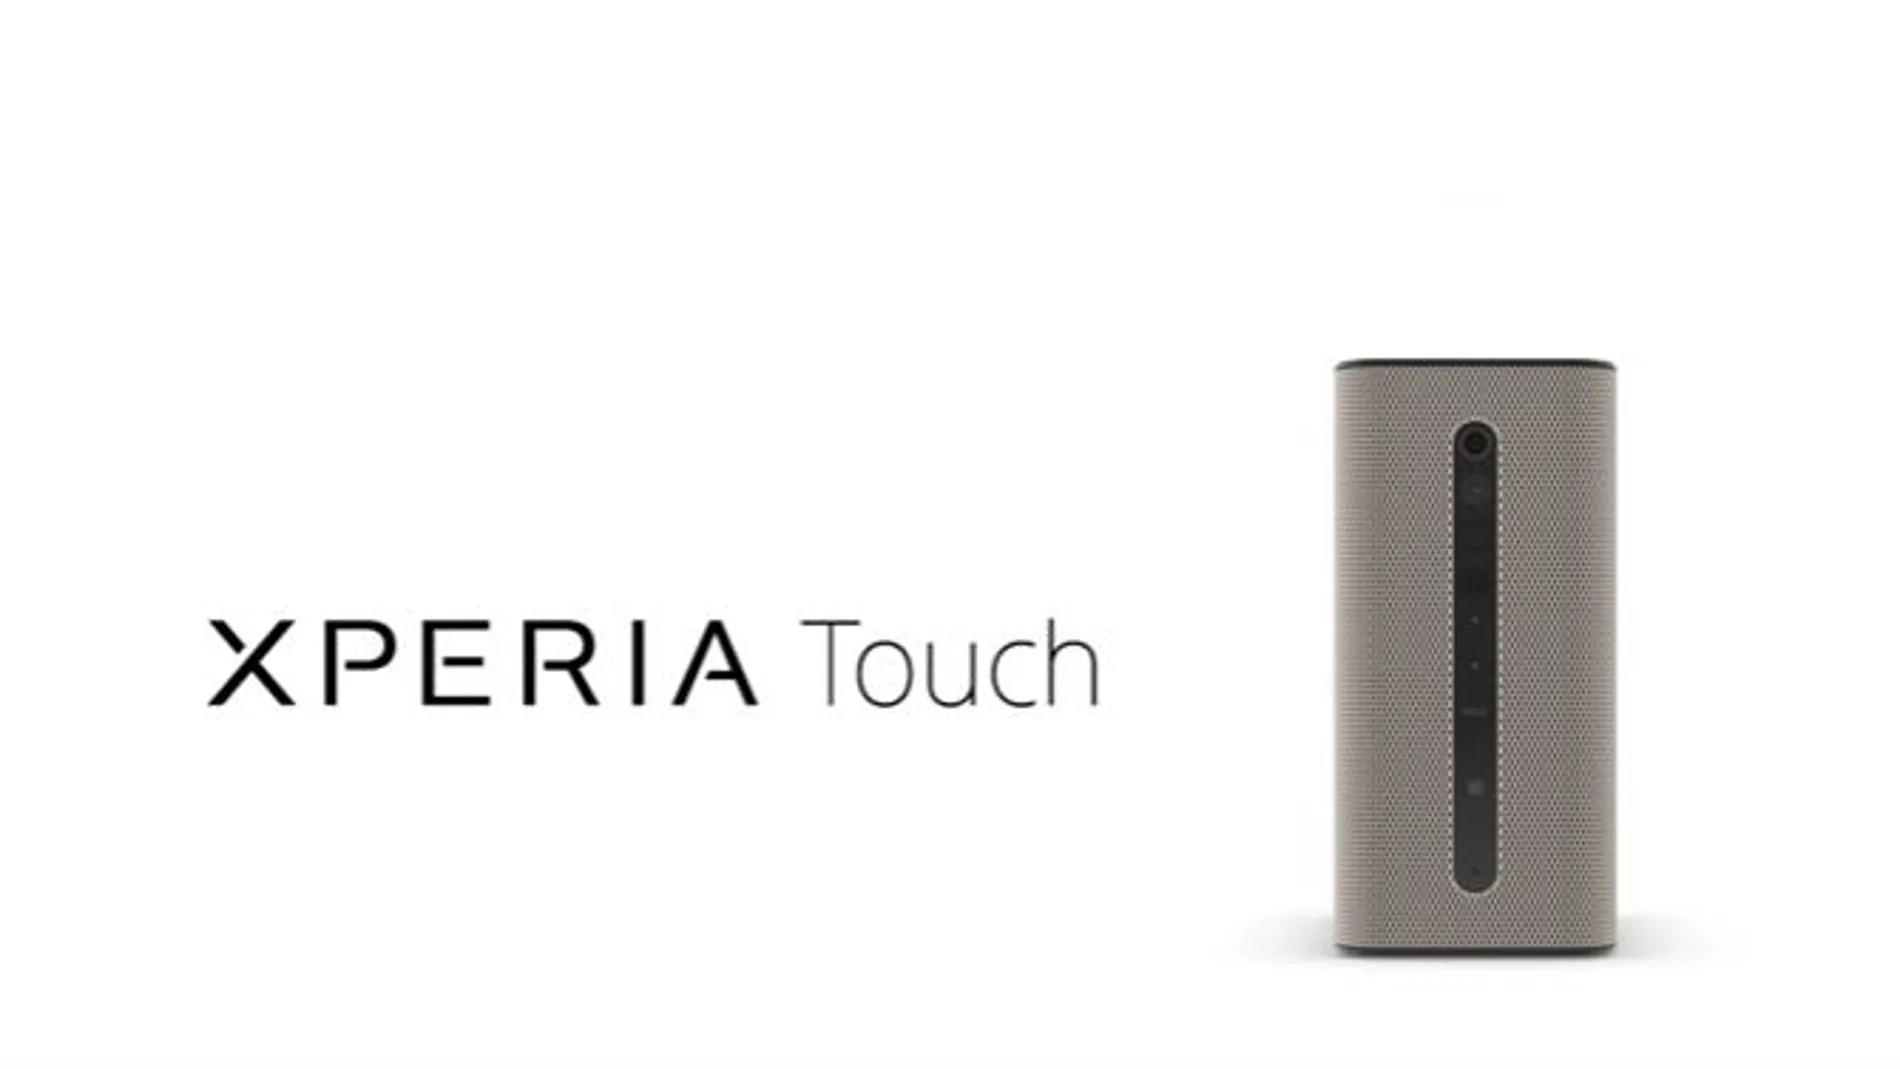 Xperia Touch: convierte cualquier superficie en una «tablet»